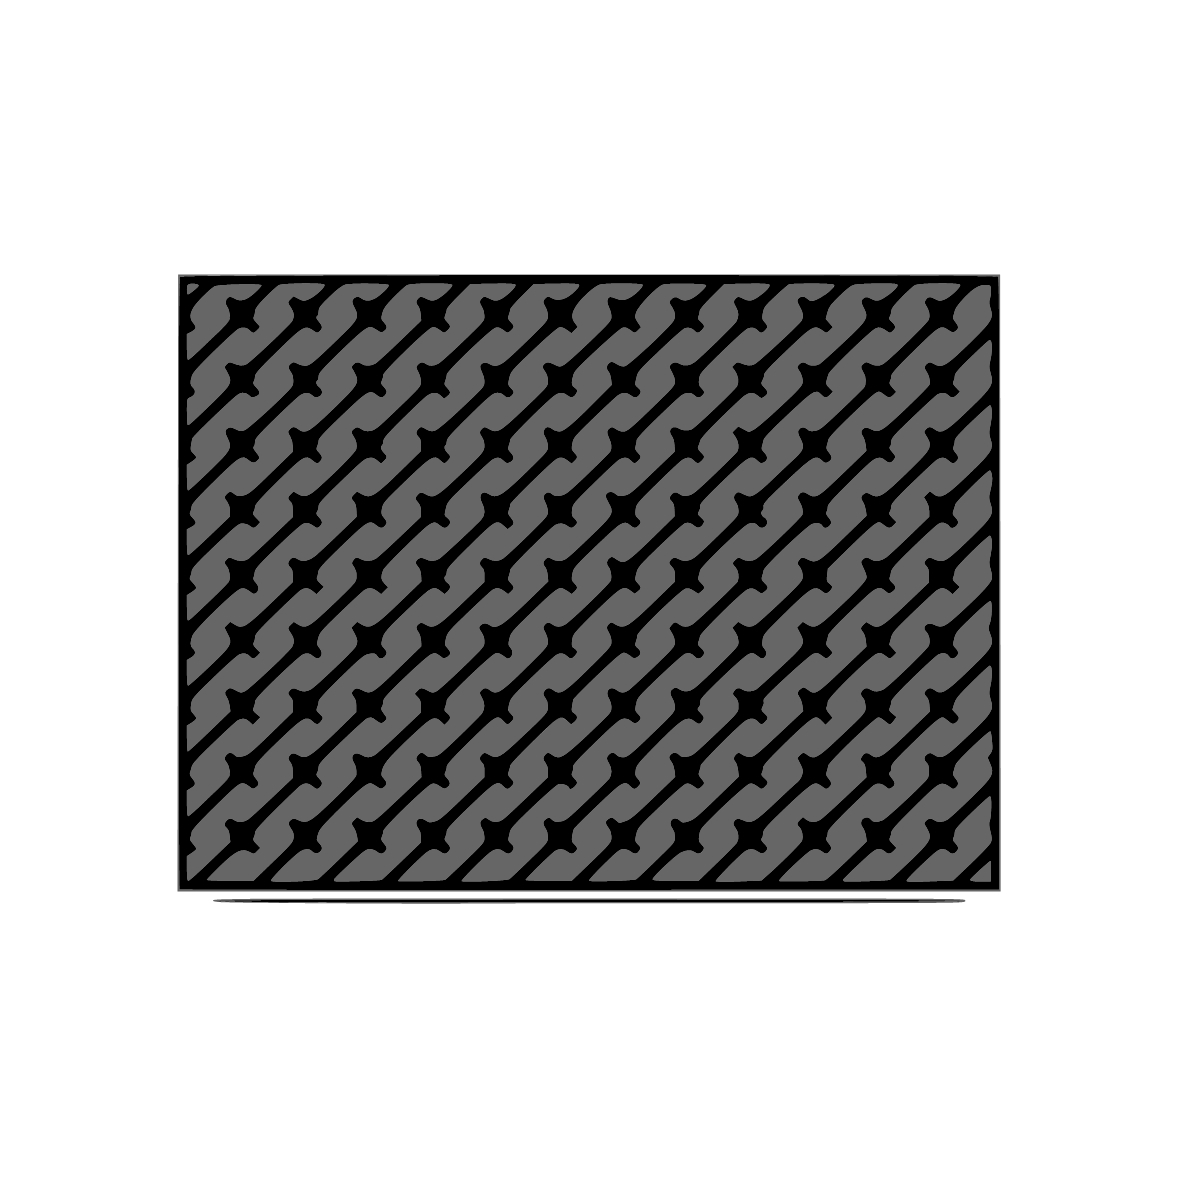 Moosgummidichtung selbstklebend | 20 mm Breite | Farbe: schwarz